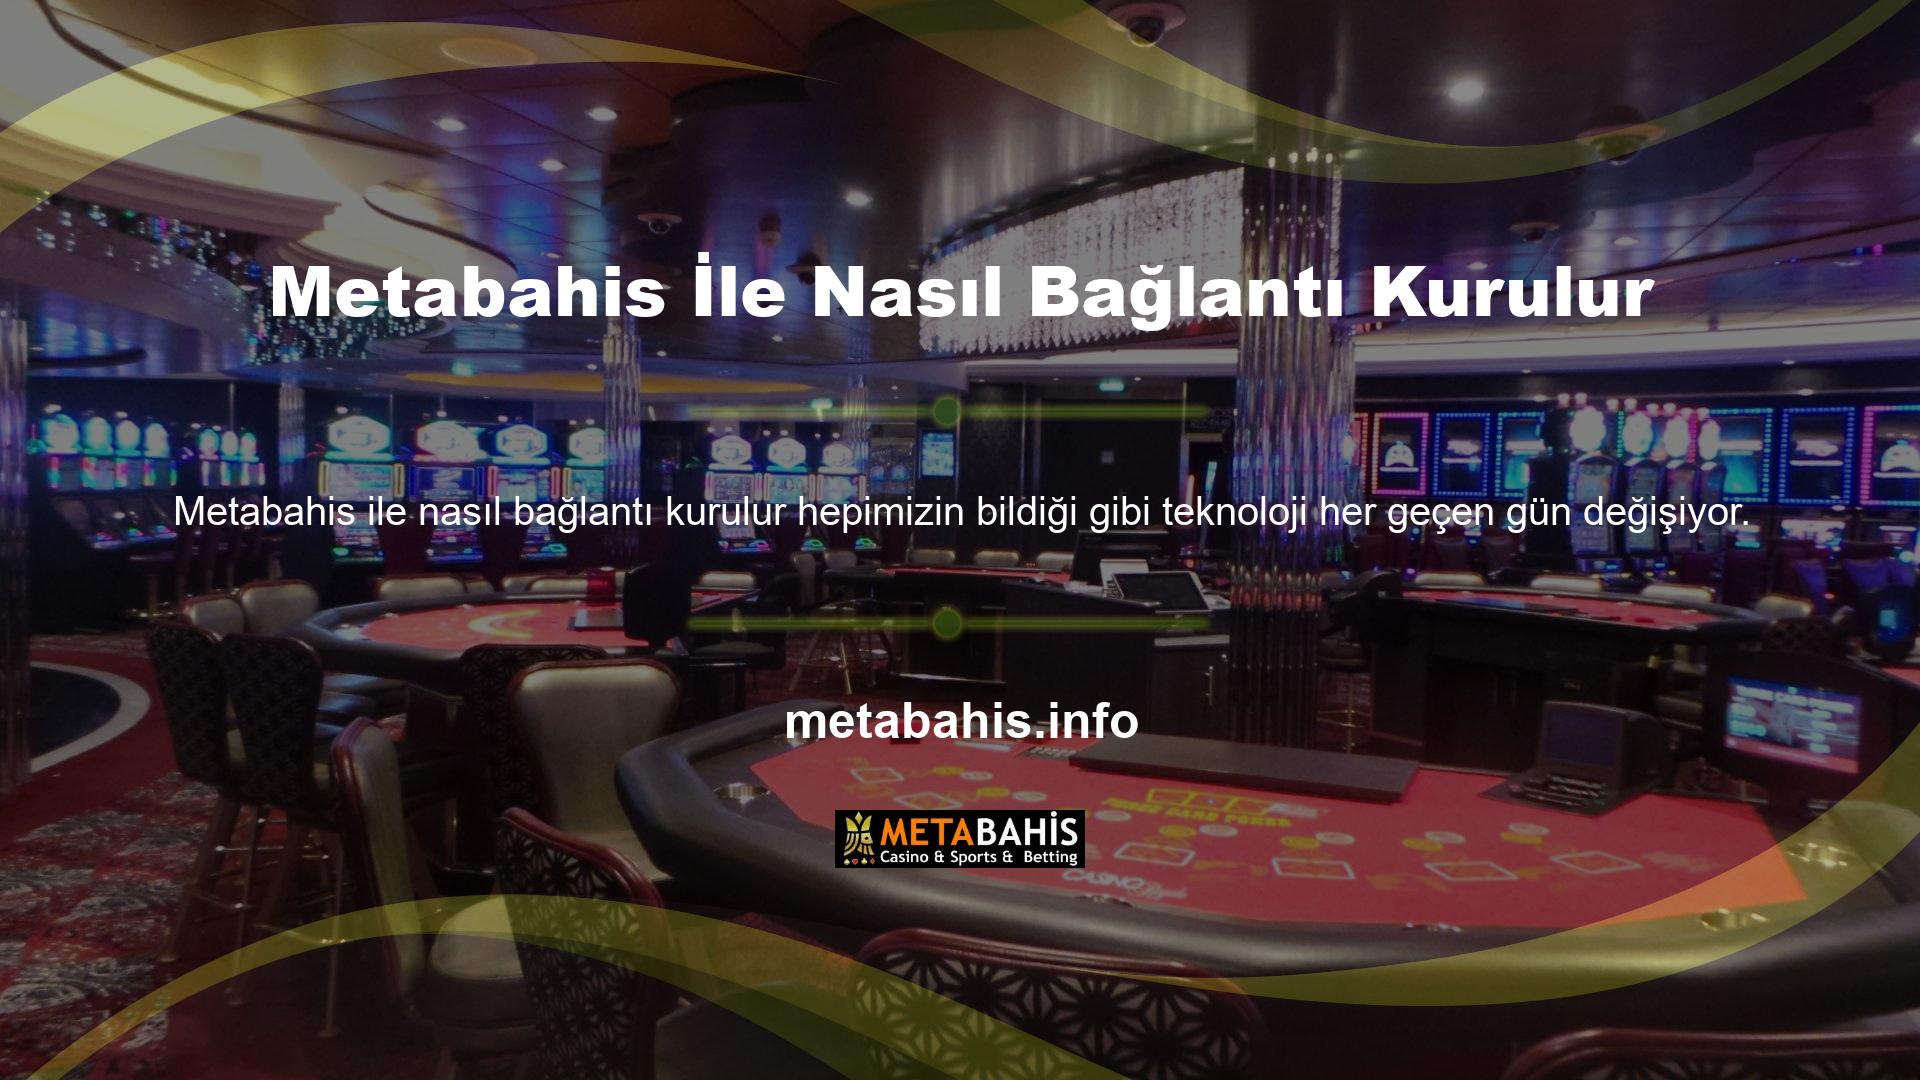 Metabahis online casino ve bahis sitesi teknolojinin gelişimine değer veren bir sitedir